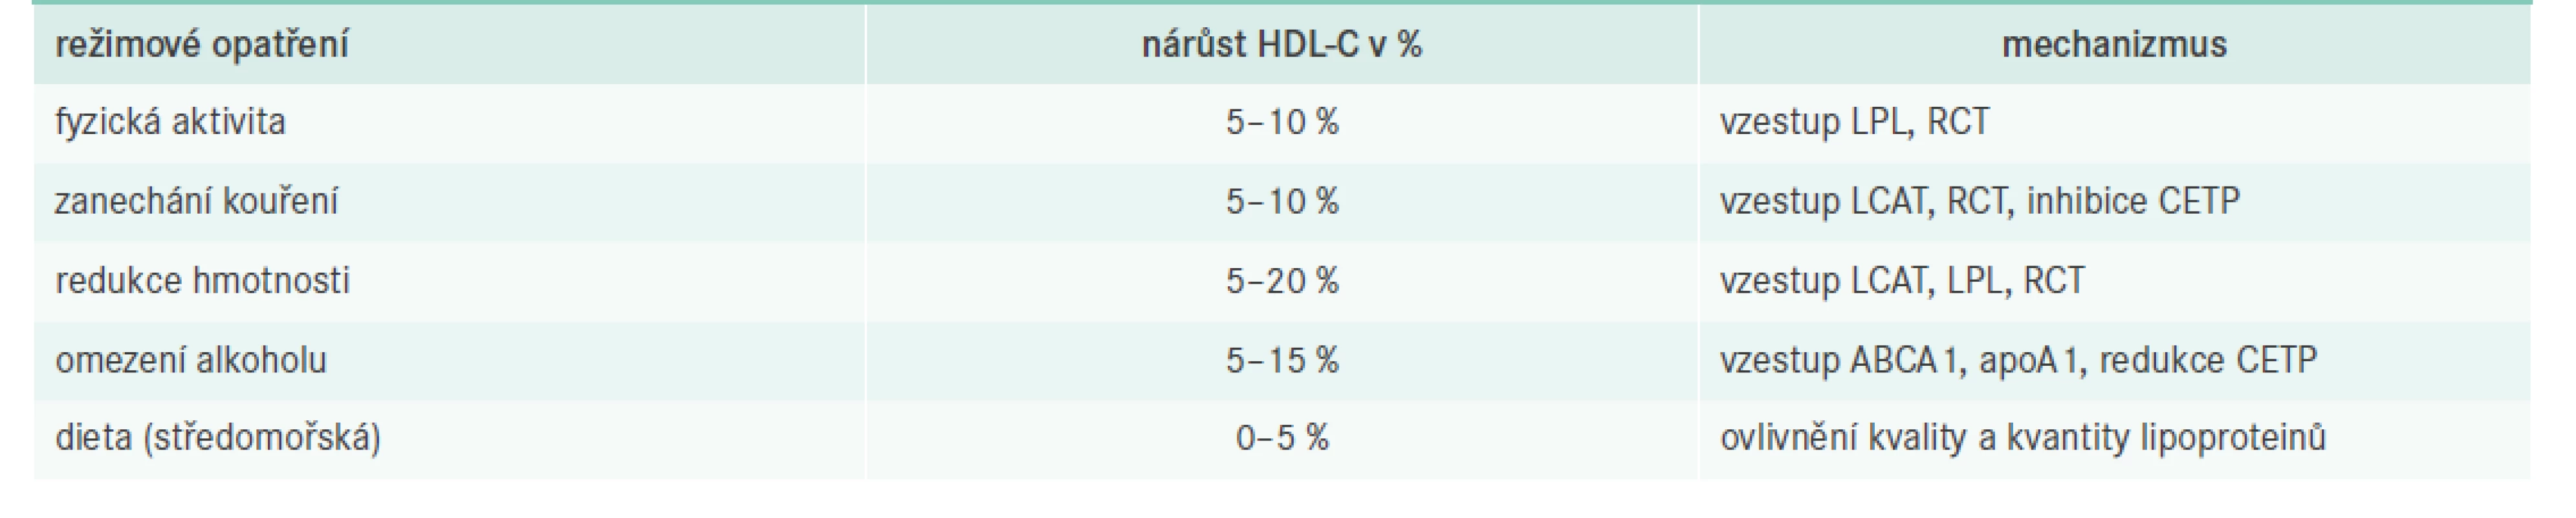 Režimová opatření ovlivňující hladiny HDL-C. Upraveno podle [1]